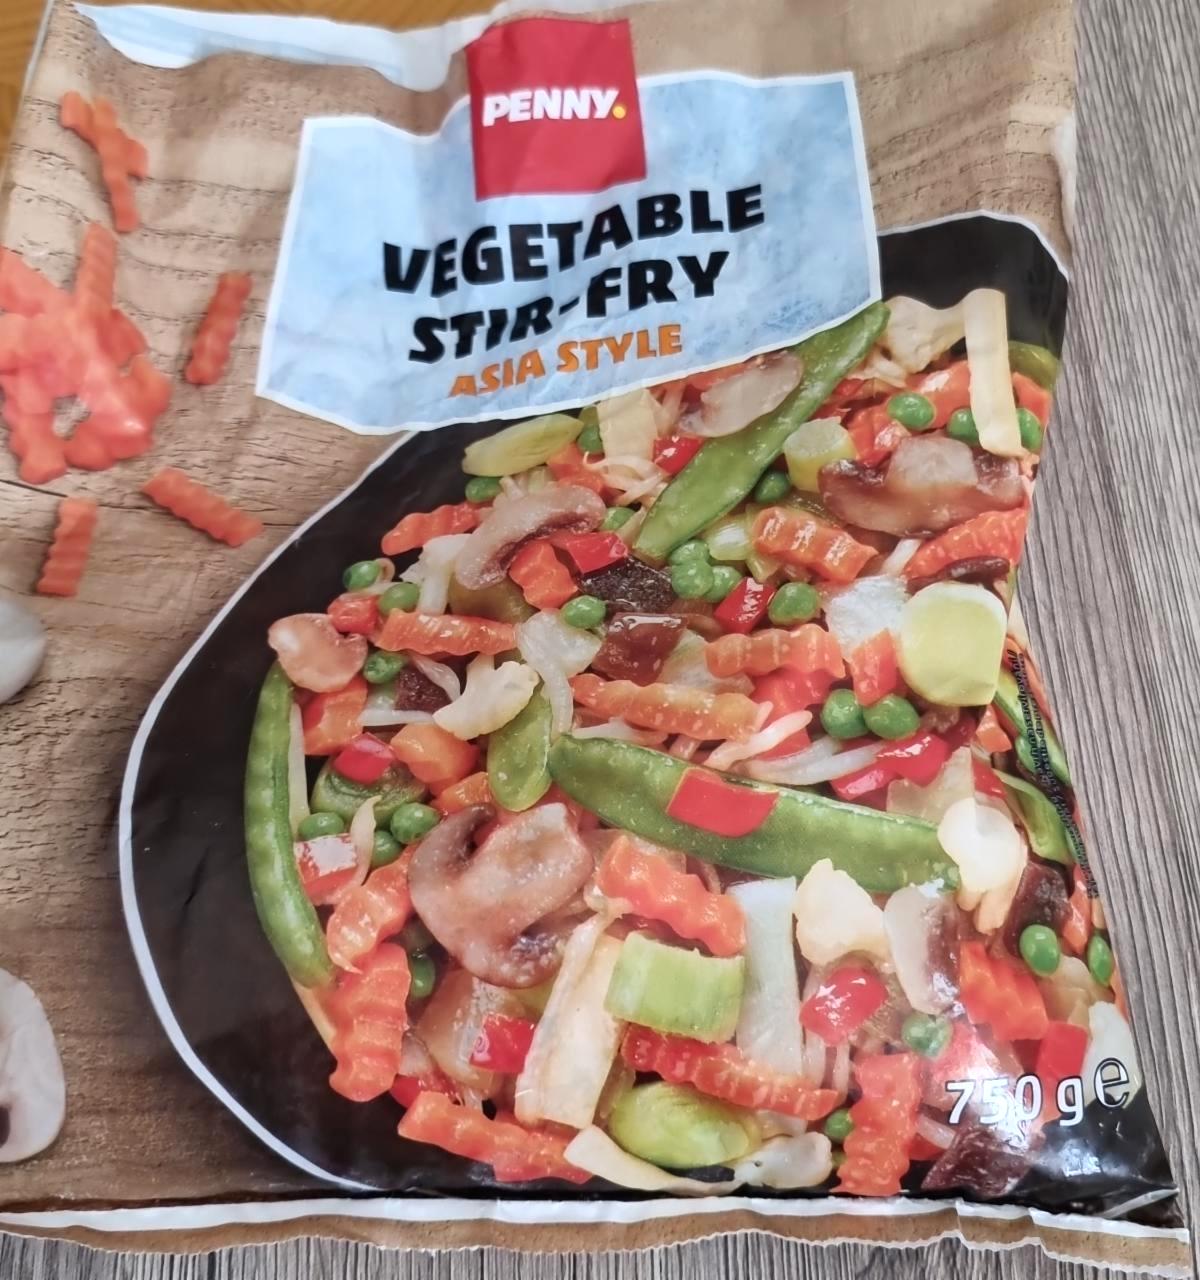 Képek - Vegetable Stir-fry Asia style Penny